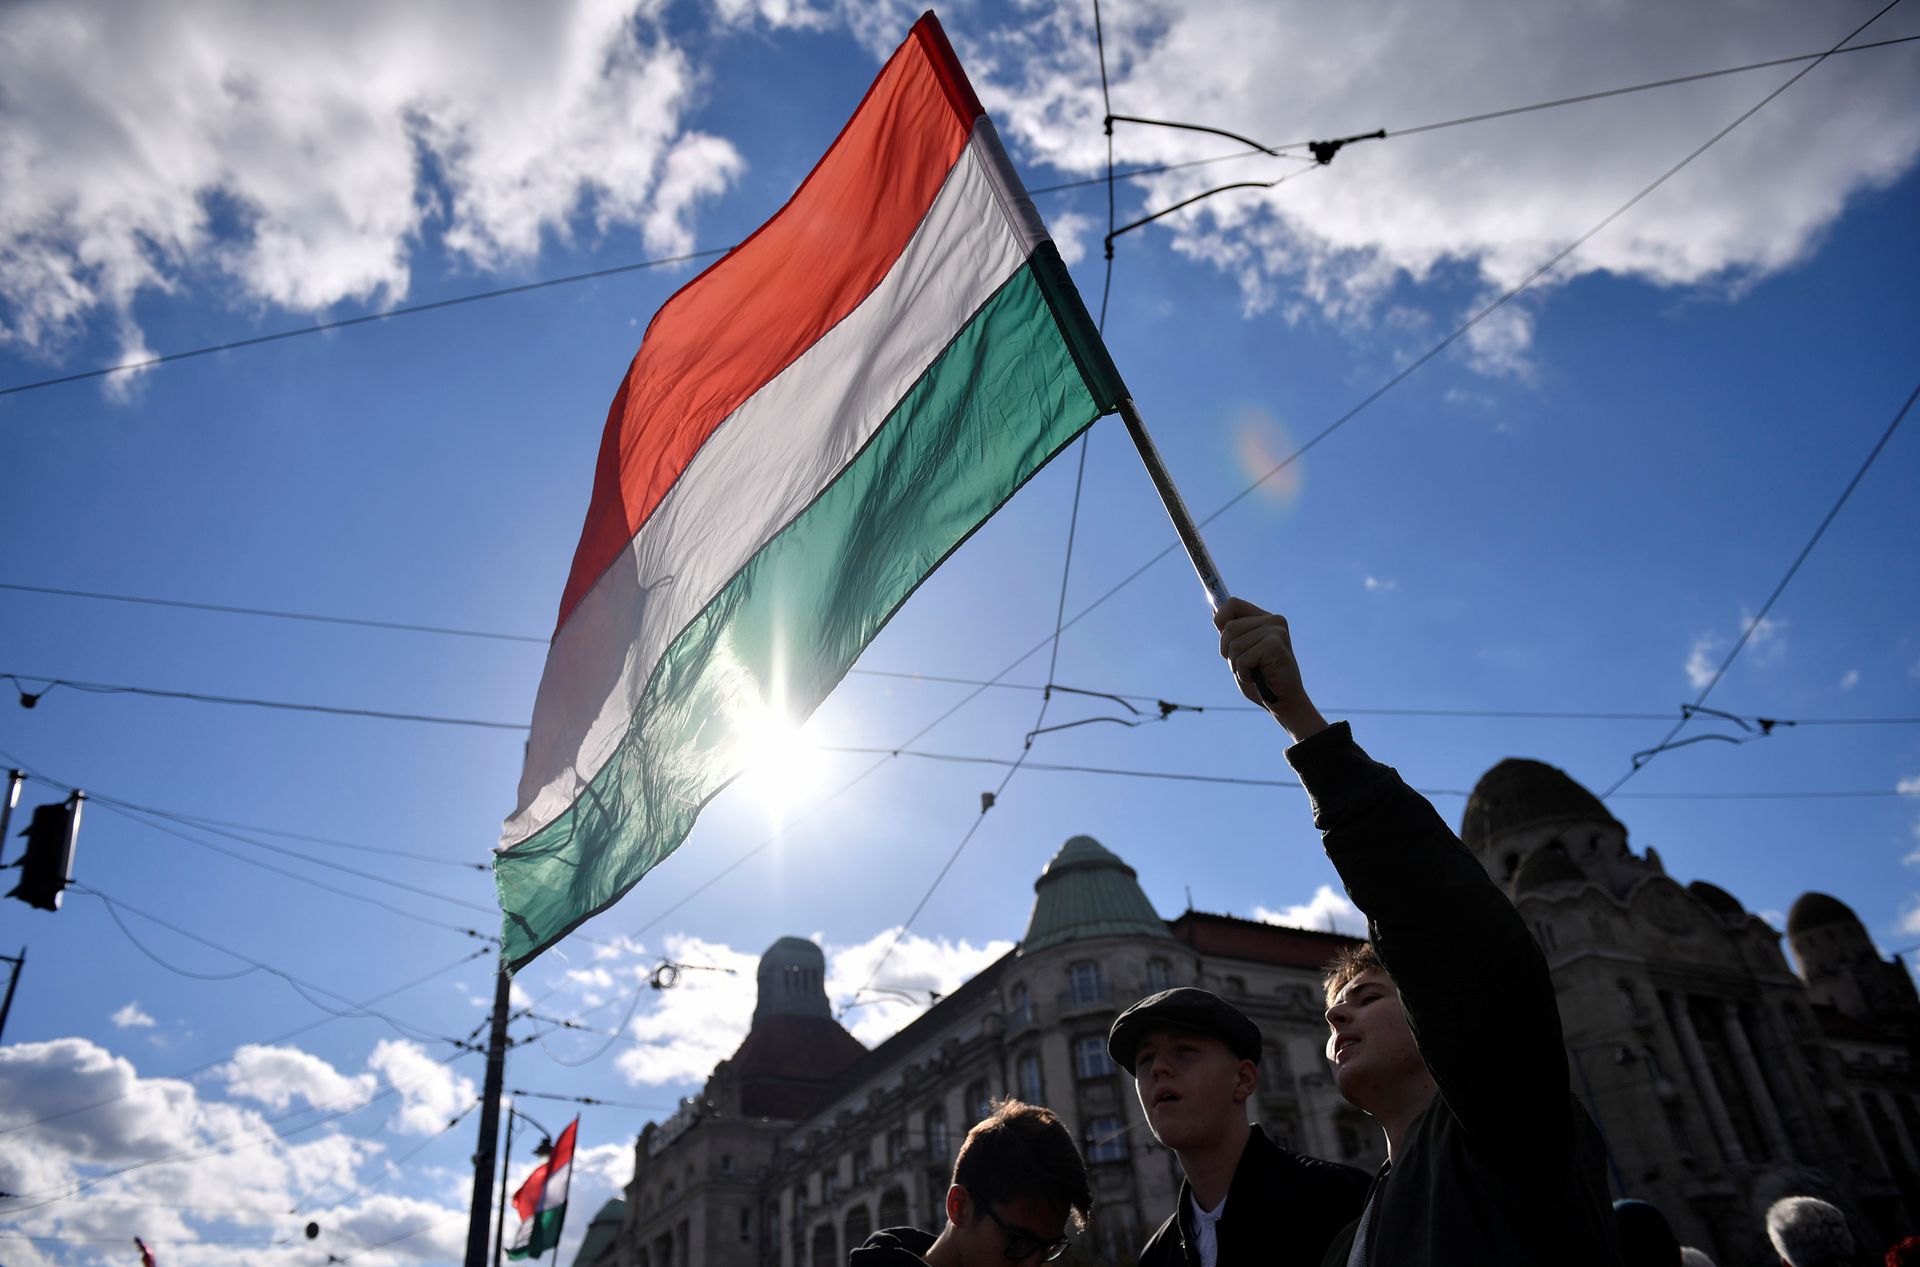 Pháp lý cờ Hungary được ban hành để đảm bảo rằng mọi người sử dụng lá cờ quốc gia của Hungary với trách nhiệm và tôn trọng. Chính quyền sẽ thực hiện các biện pháp cần thiết để bảo vệ sự linh thánh của lá cờ quốc gia này và cải thiện chất lượng cuộc sống của người dân Hungary.